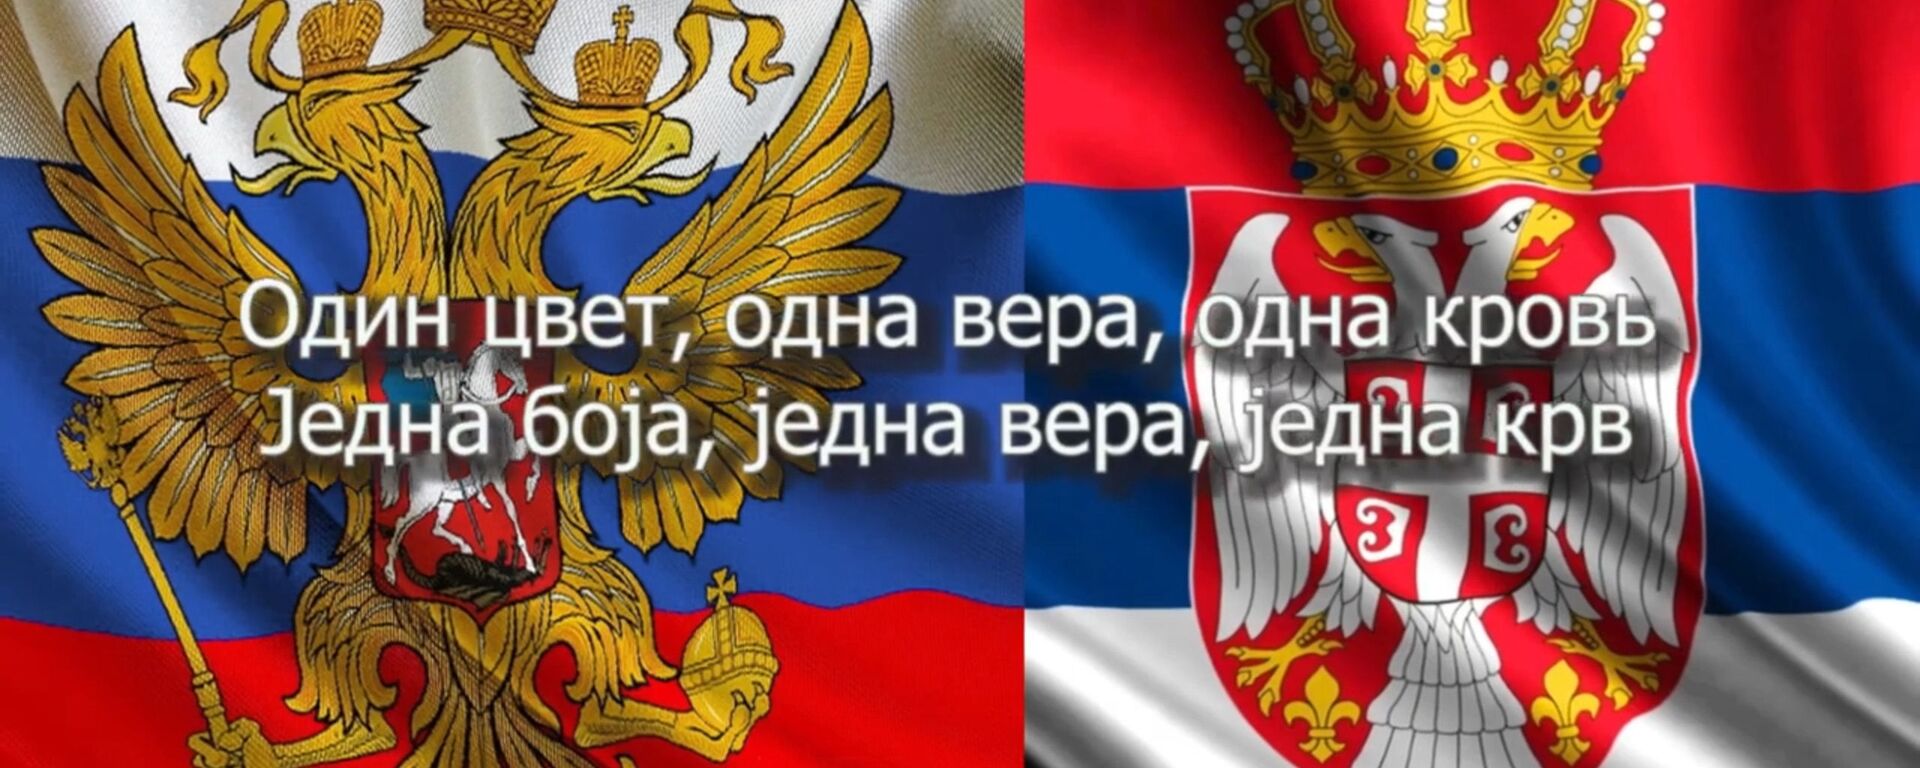 Zastave Rusije i Srbije - Sputnik Srbija, 1920, 07.11.2019